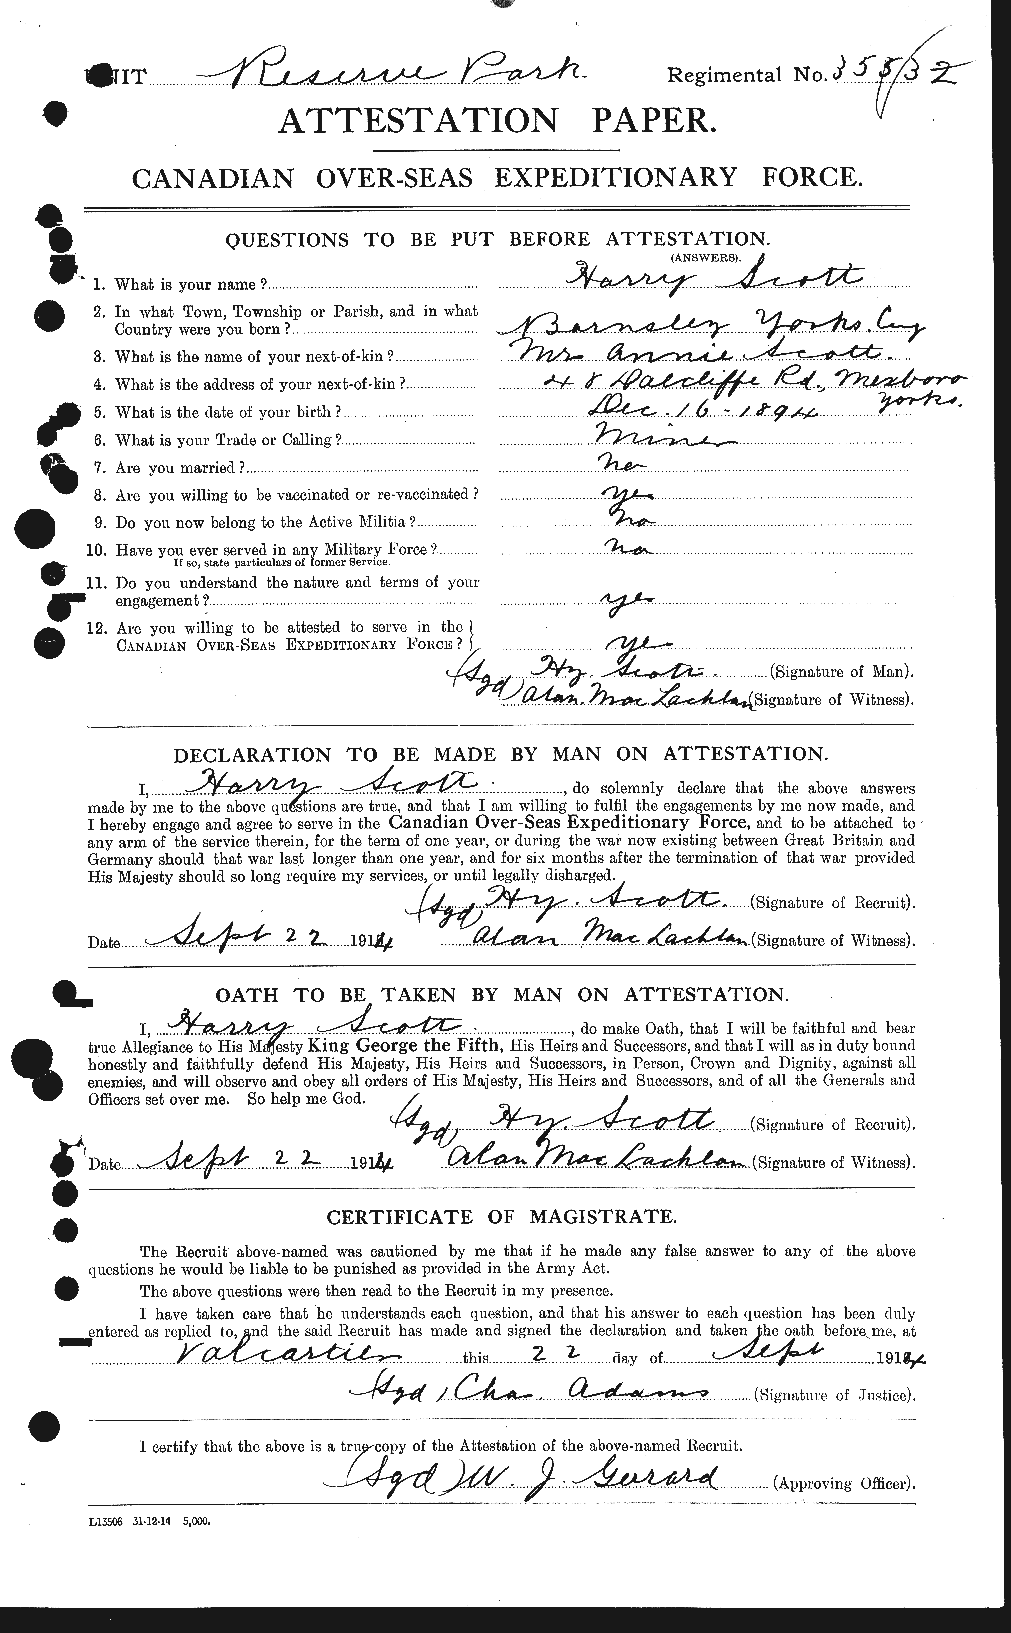 Dossiers du Personnel de la Première Guerre mondiale - CEC 086317a